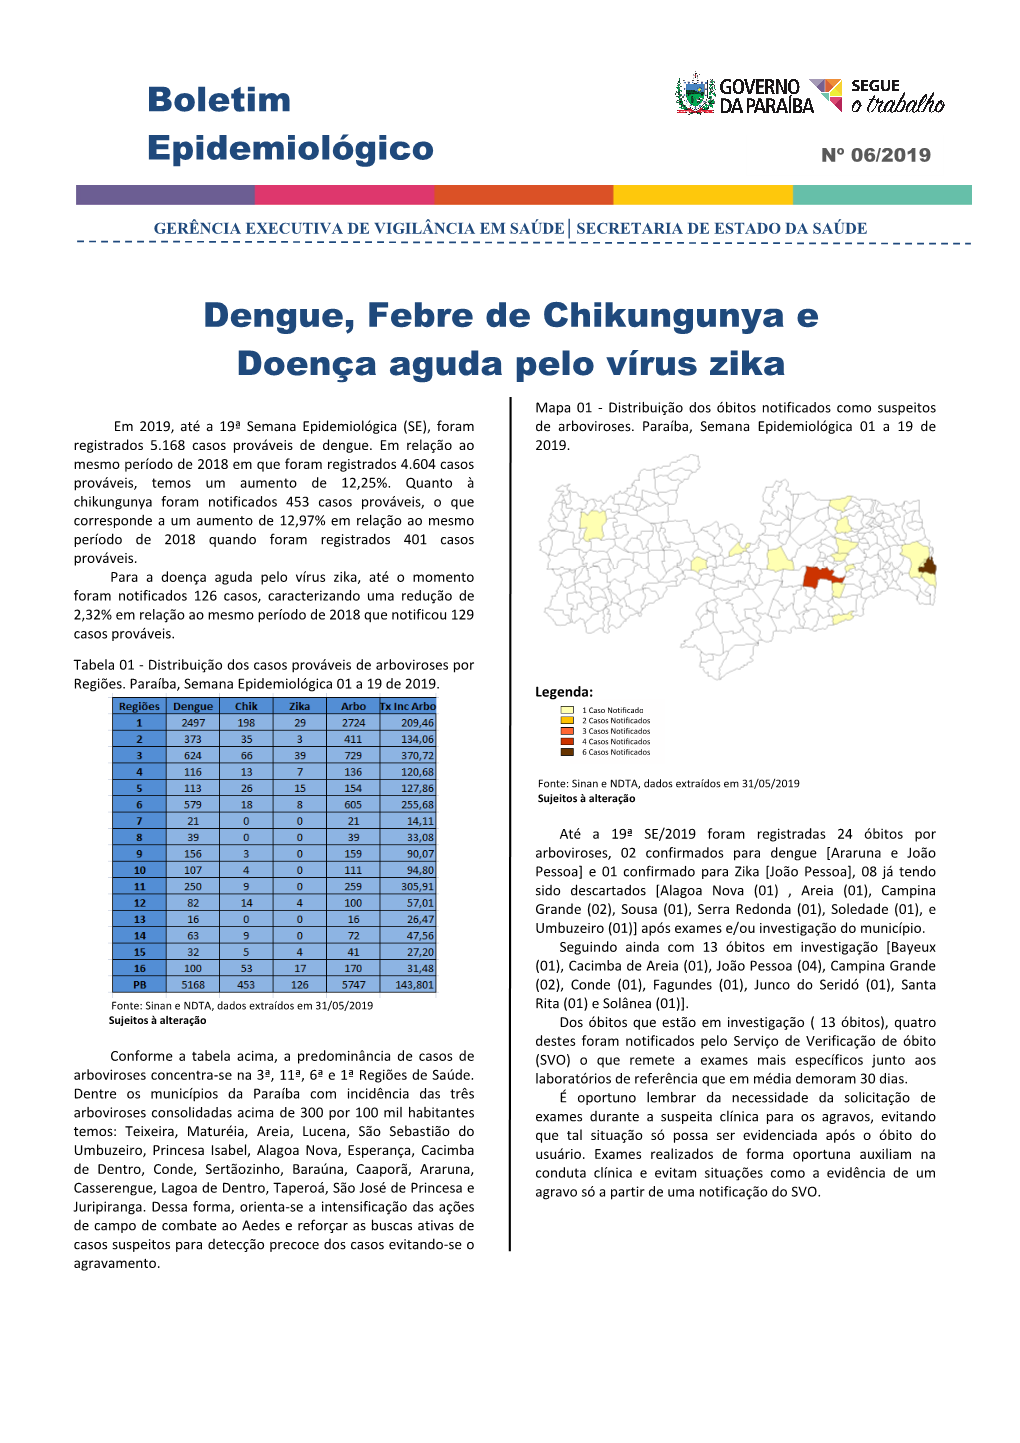 Boletim Epidemiológico Dengue, Febre De Chikungunya E Doença